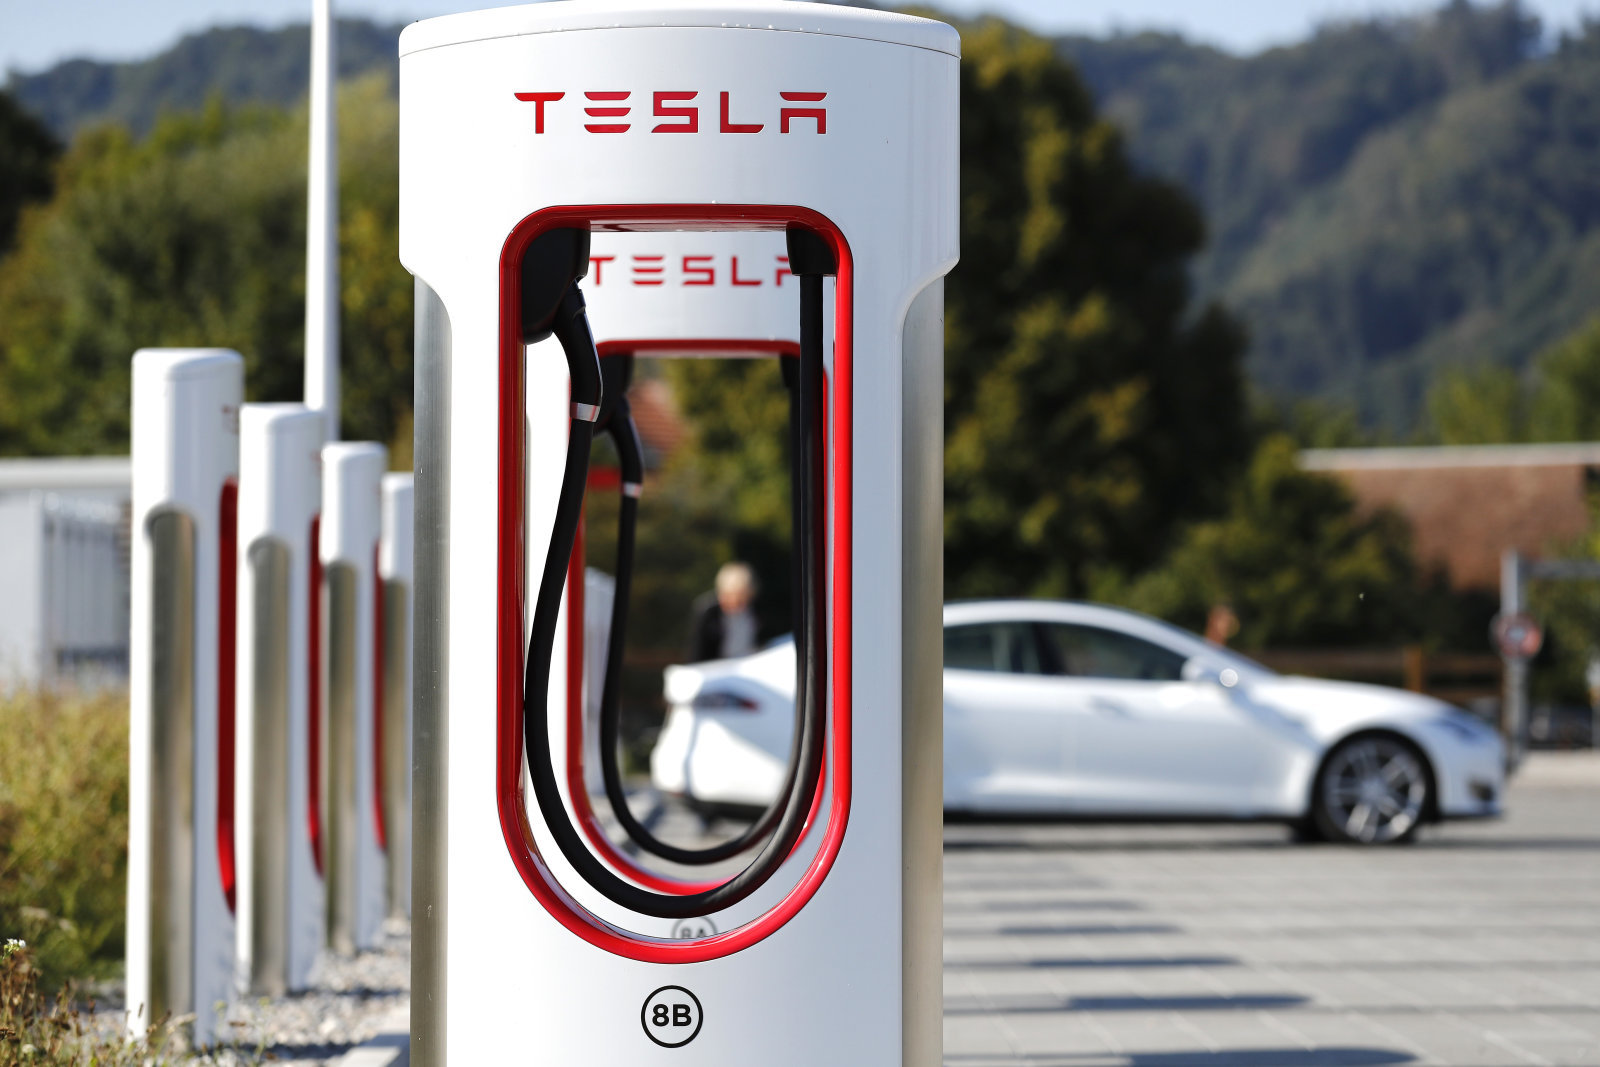 Comment bien utiliser les superchargers Tesla